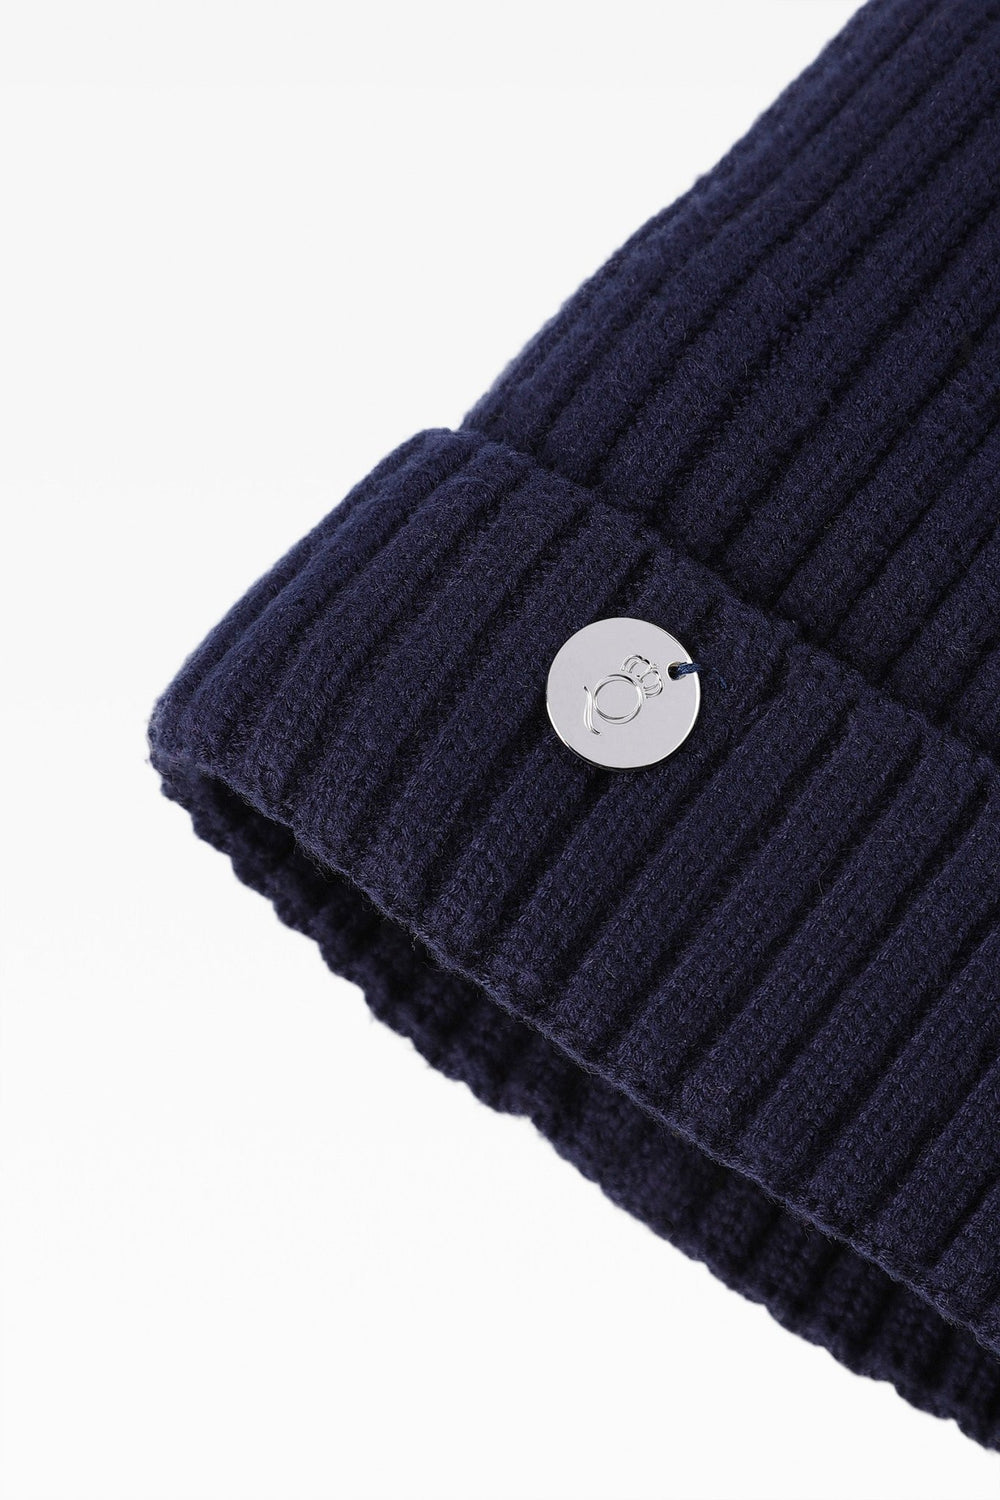 Charlie Rib Pom Pom Hat with Fleece Band - Faux Fur - Dunedin Cashmere